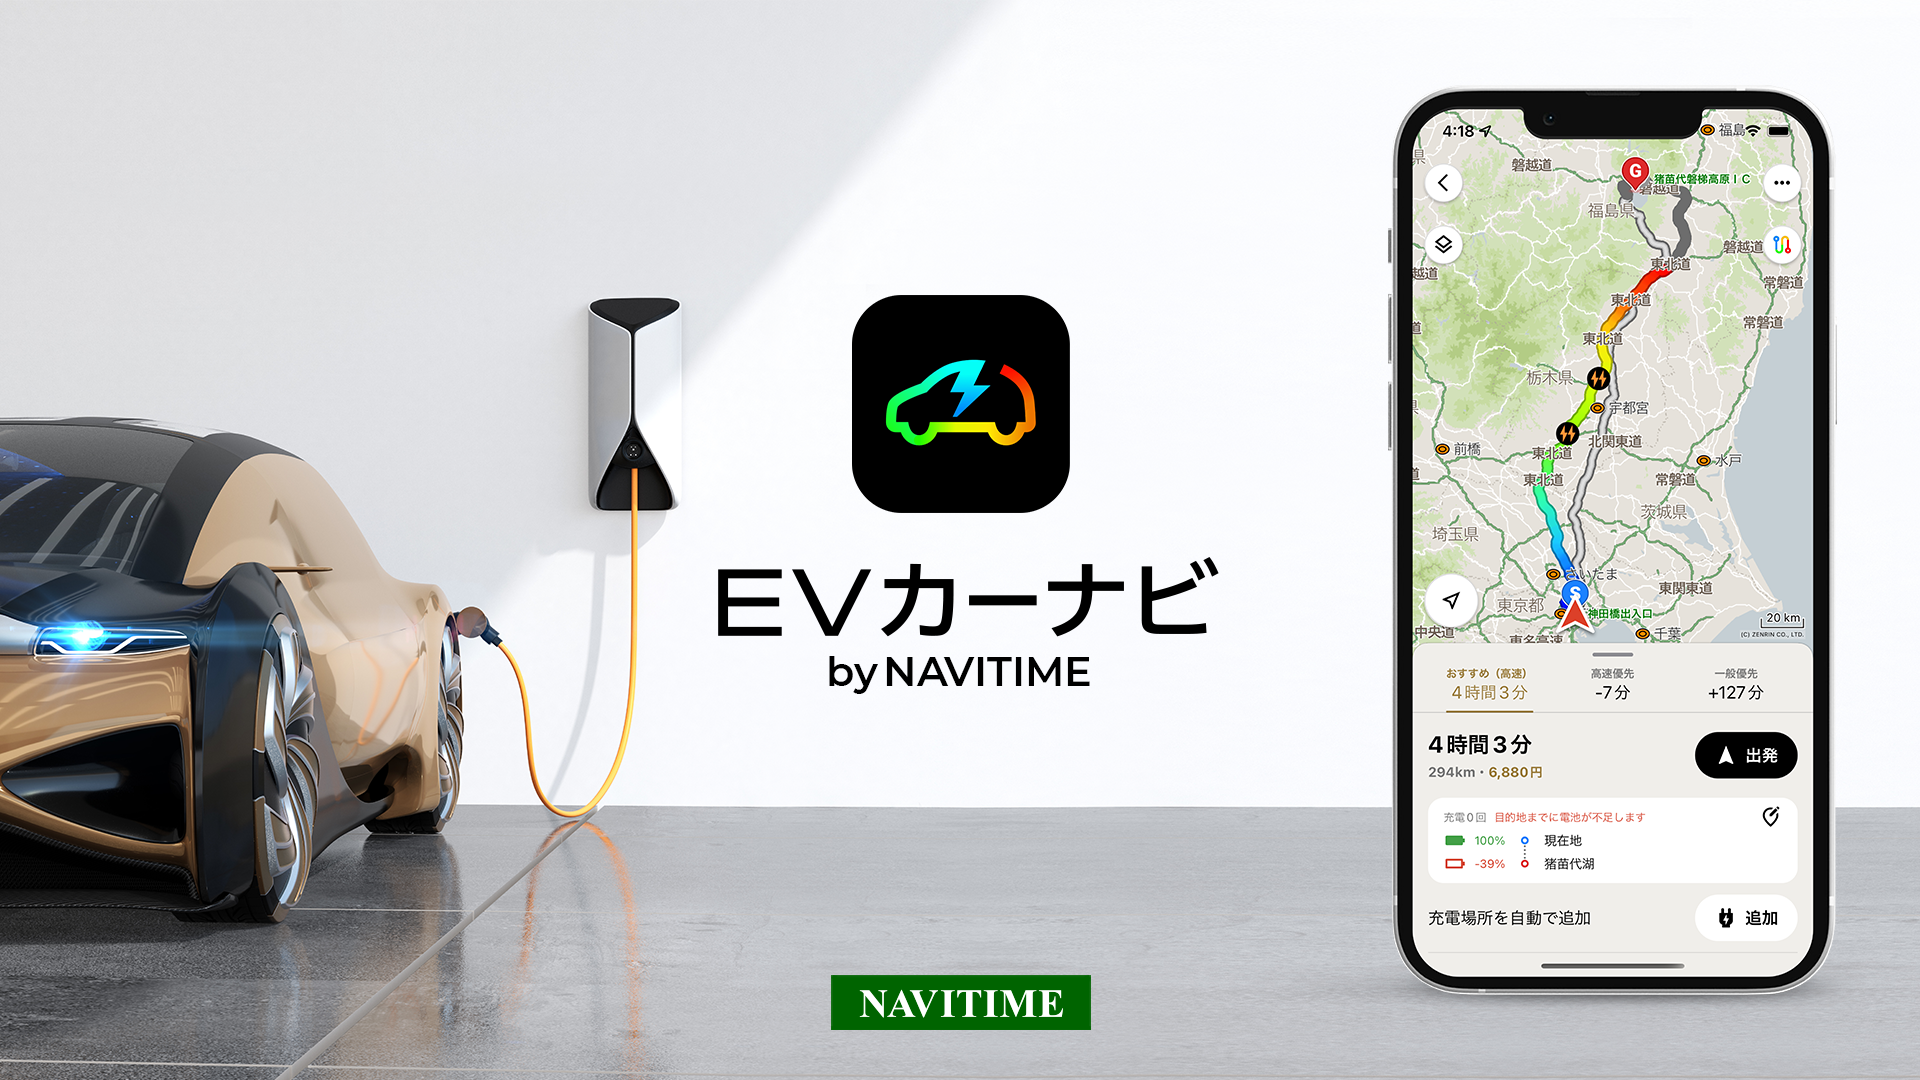 EV専用「EVカーナビ by NAVITIME」提供開始　最適な充電場所を考慮したルートでEVの長距離移動をサポート